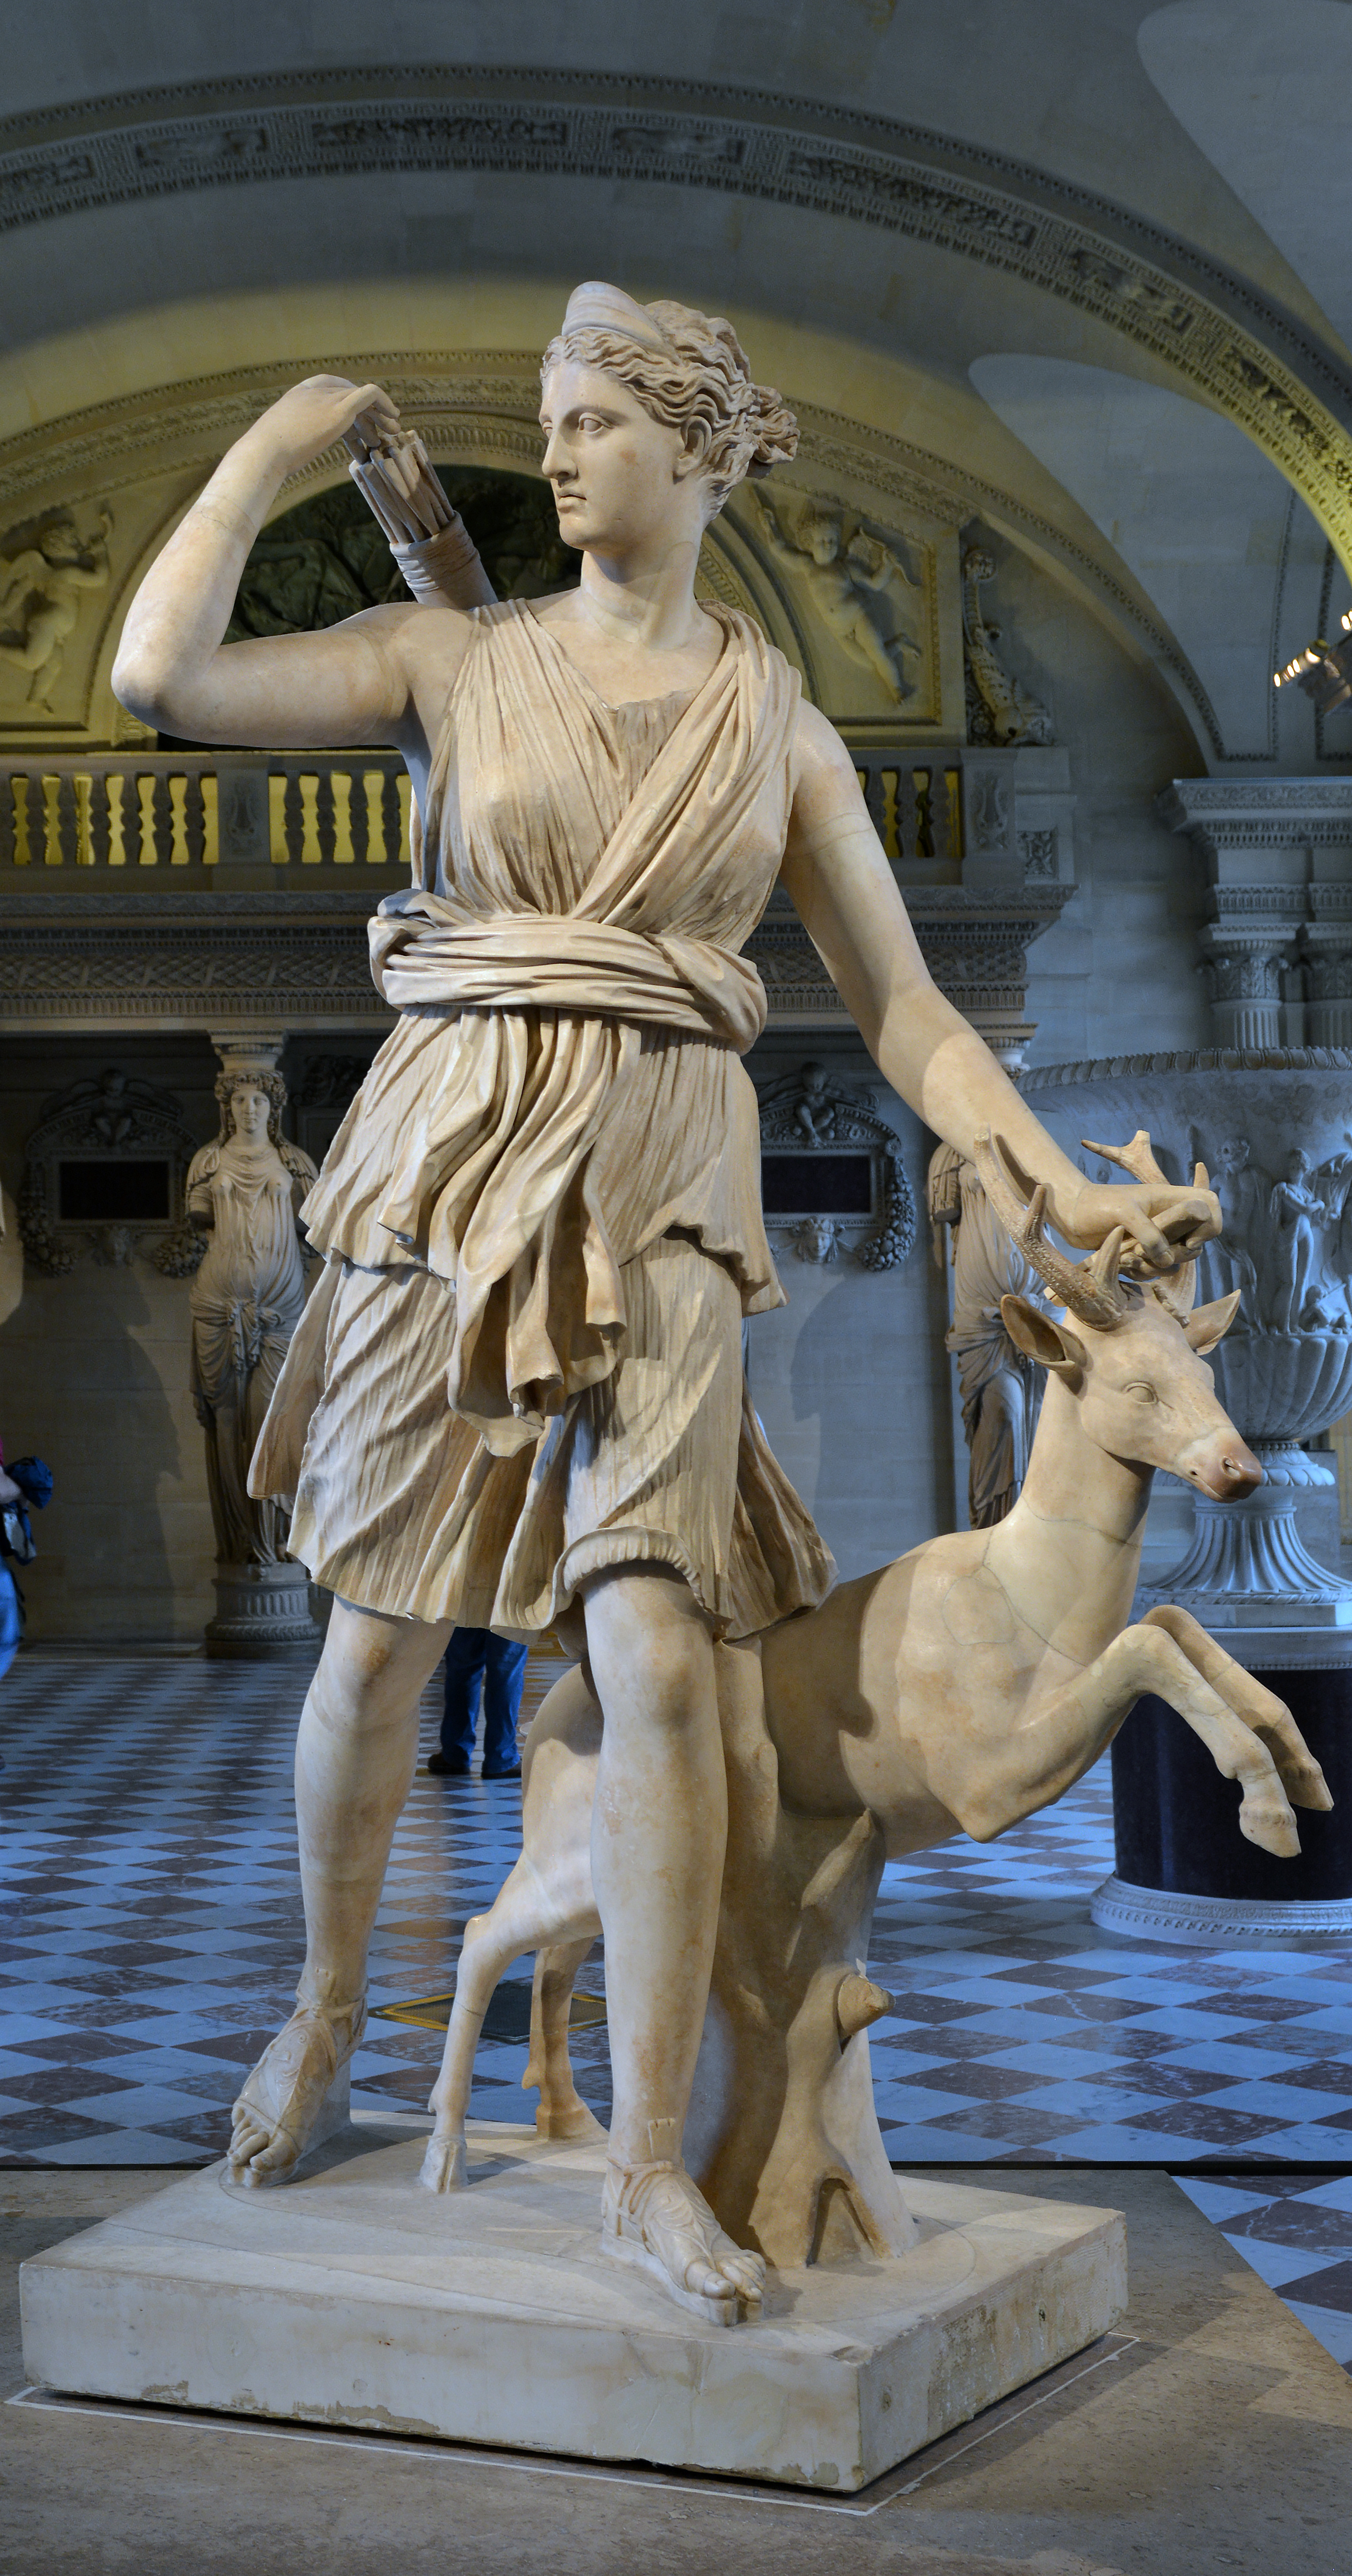 Դիանա՝ որսի հռոմեական աստվածուհի